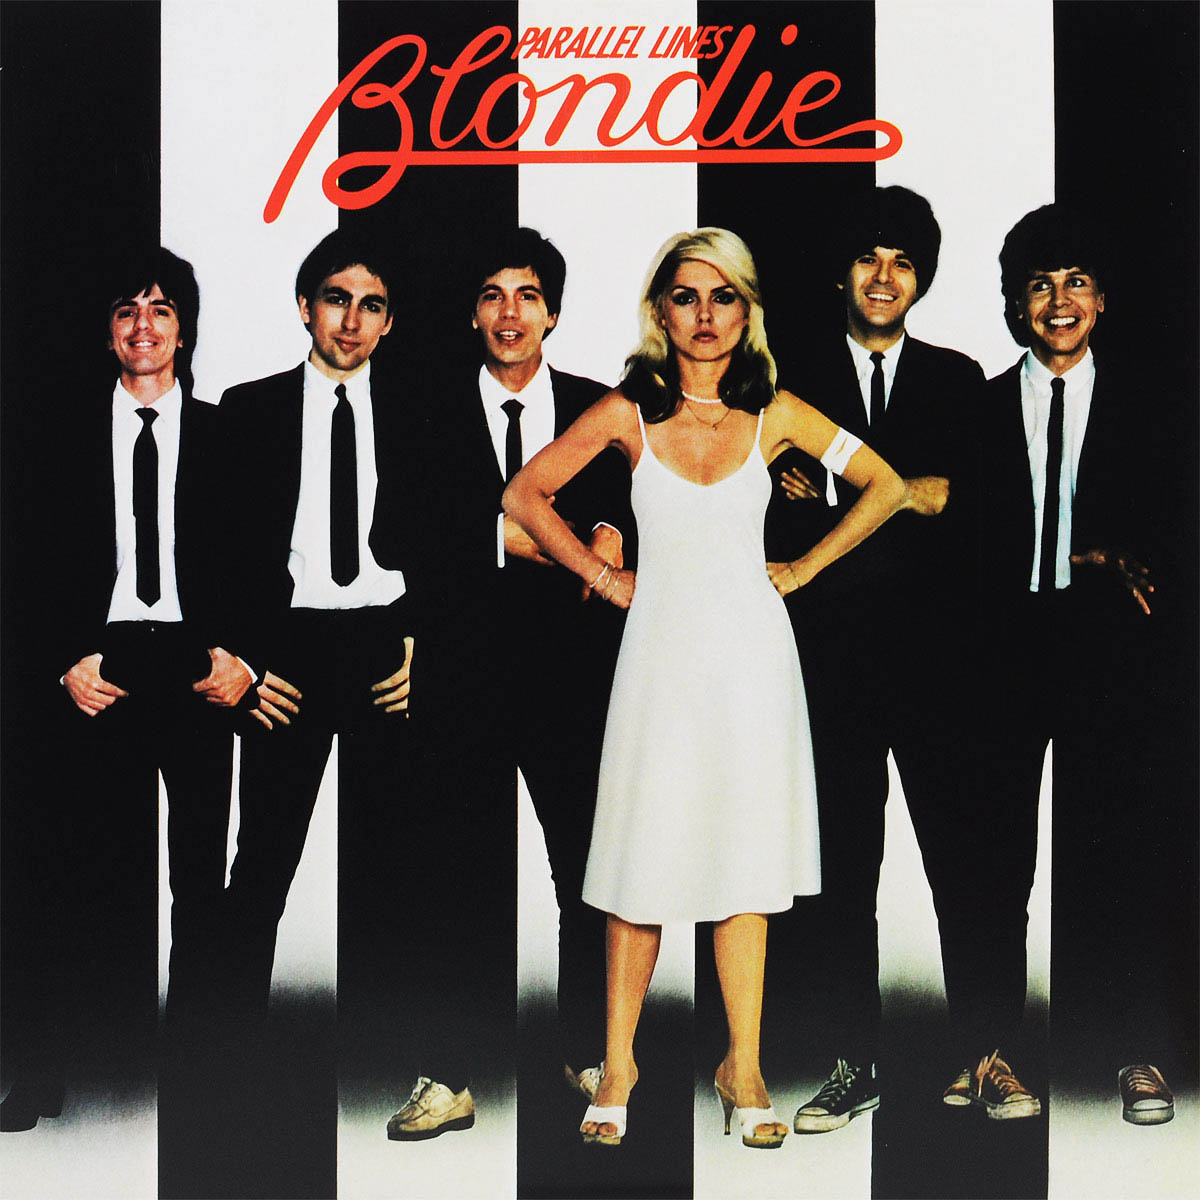 Couverture de l'album Parallel Lines de Blondie (1978)